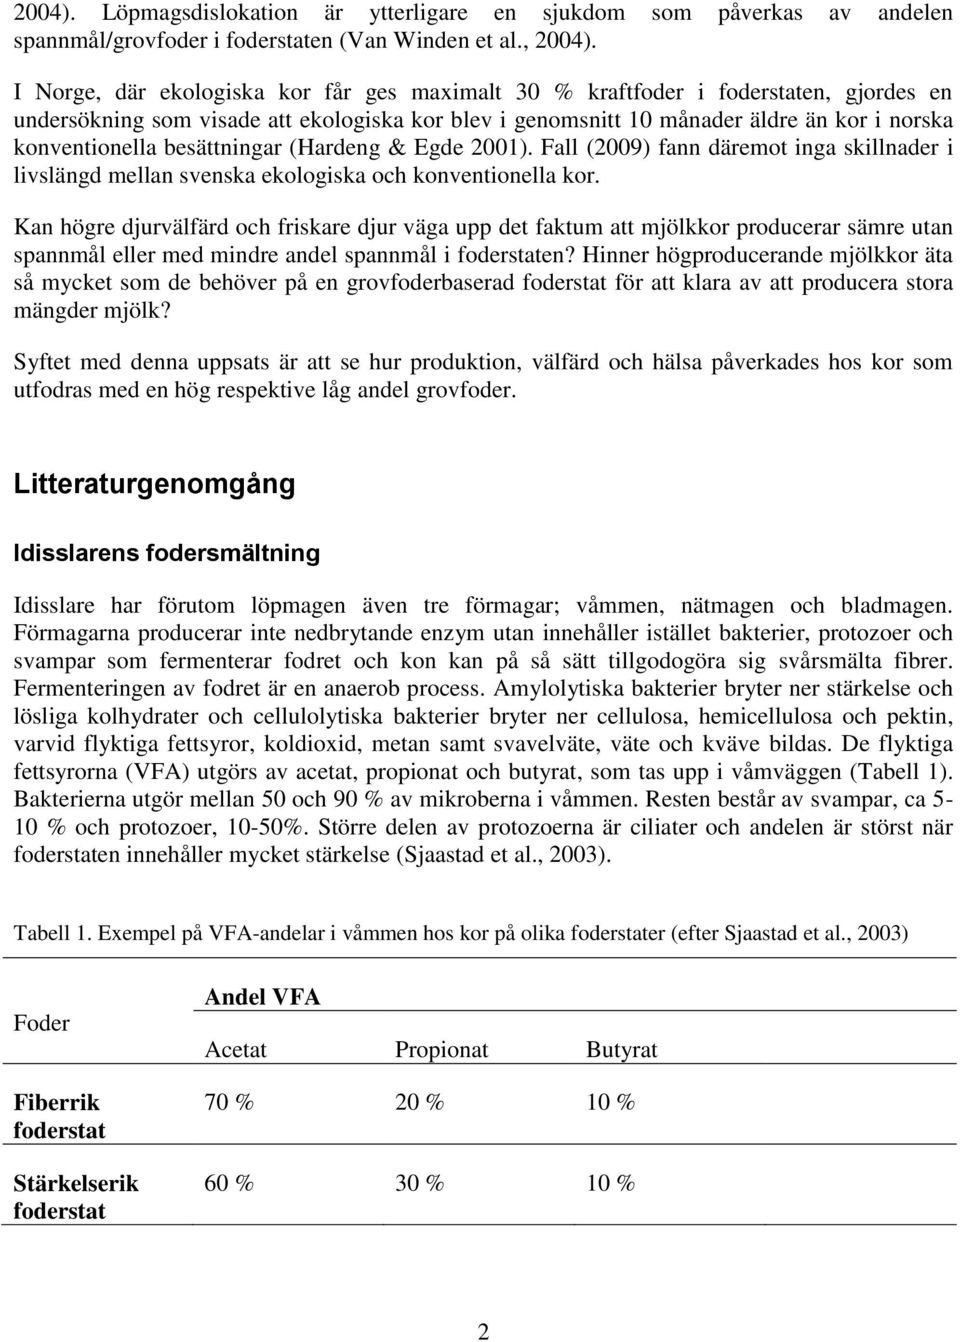 besättningar (Hardeng & Egde 2001). Fall (2009) fann däremot inga skillnader i livslängd mellan svenska ekologiska och konventionella kor.